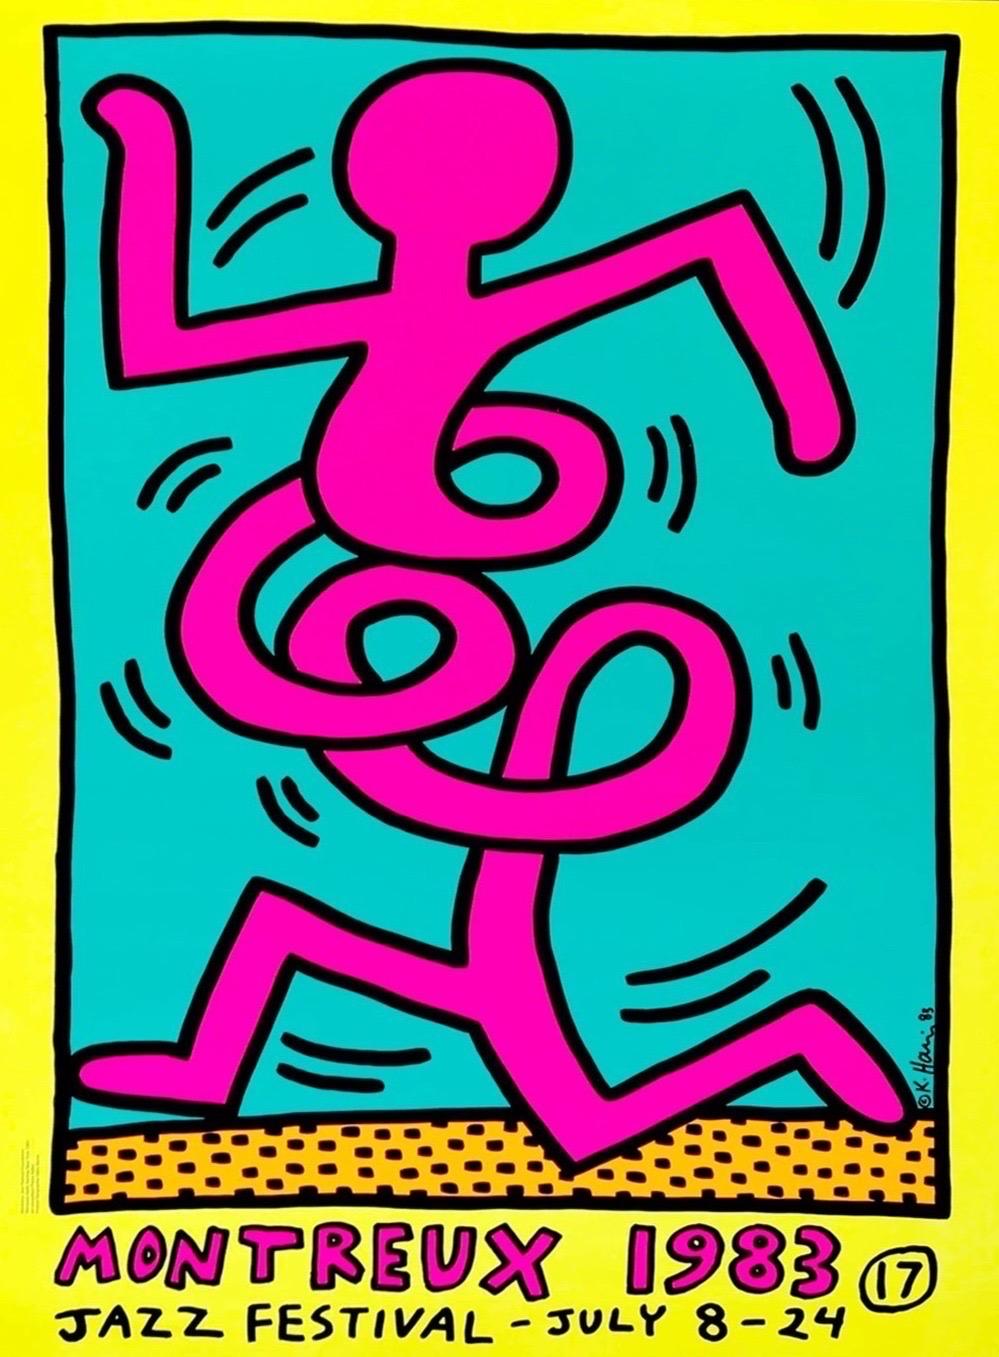 1983 Keith Haring Montreux Jazz Festival Gelbes Originalplakat

Keith Haring wurde eingeladen, die Plakate für das 17. Montreux Jazz Festival 1983 zu gestalten, nachdem der Organisator Pierre Keller den Künstler einige Monate nach seiner ersten